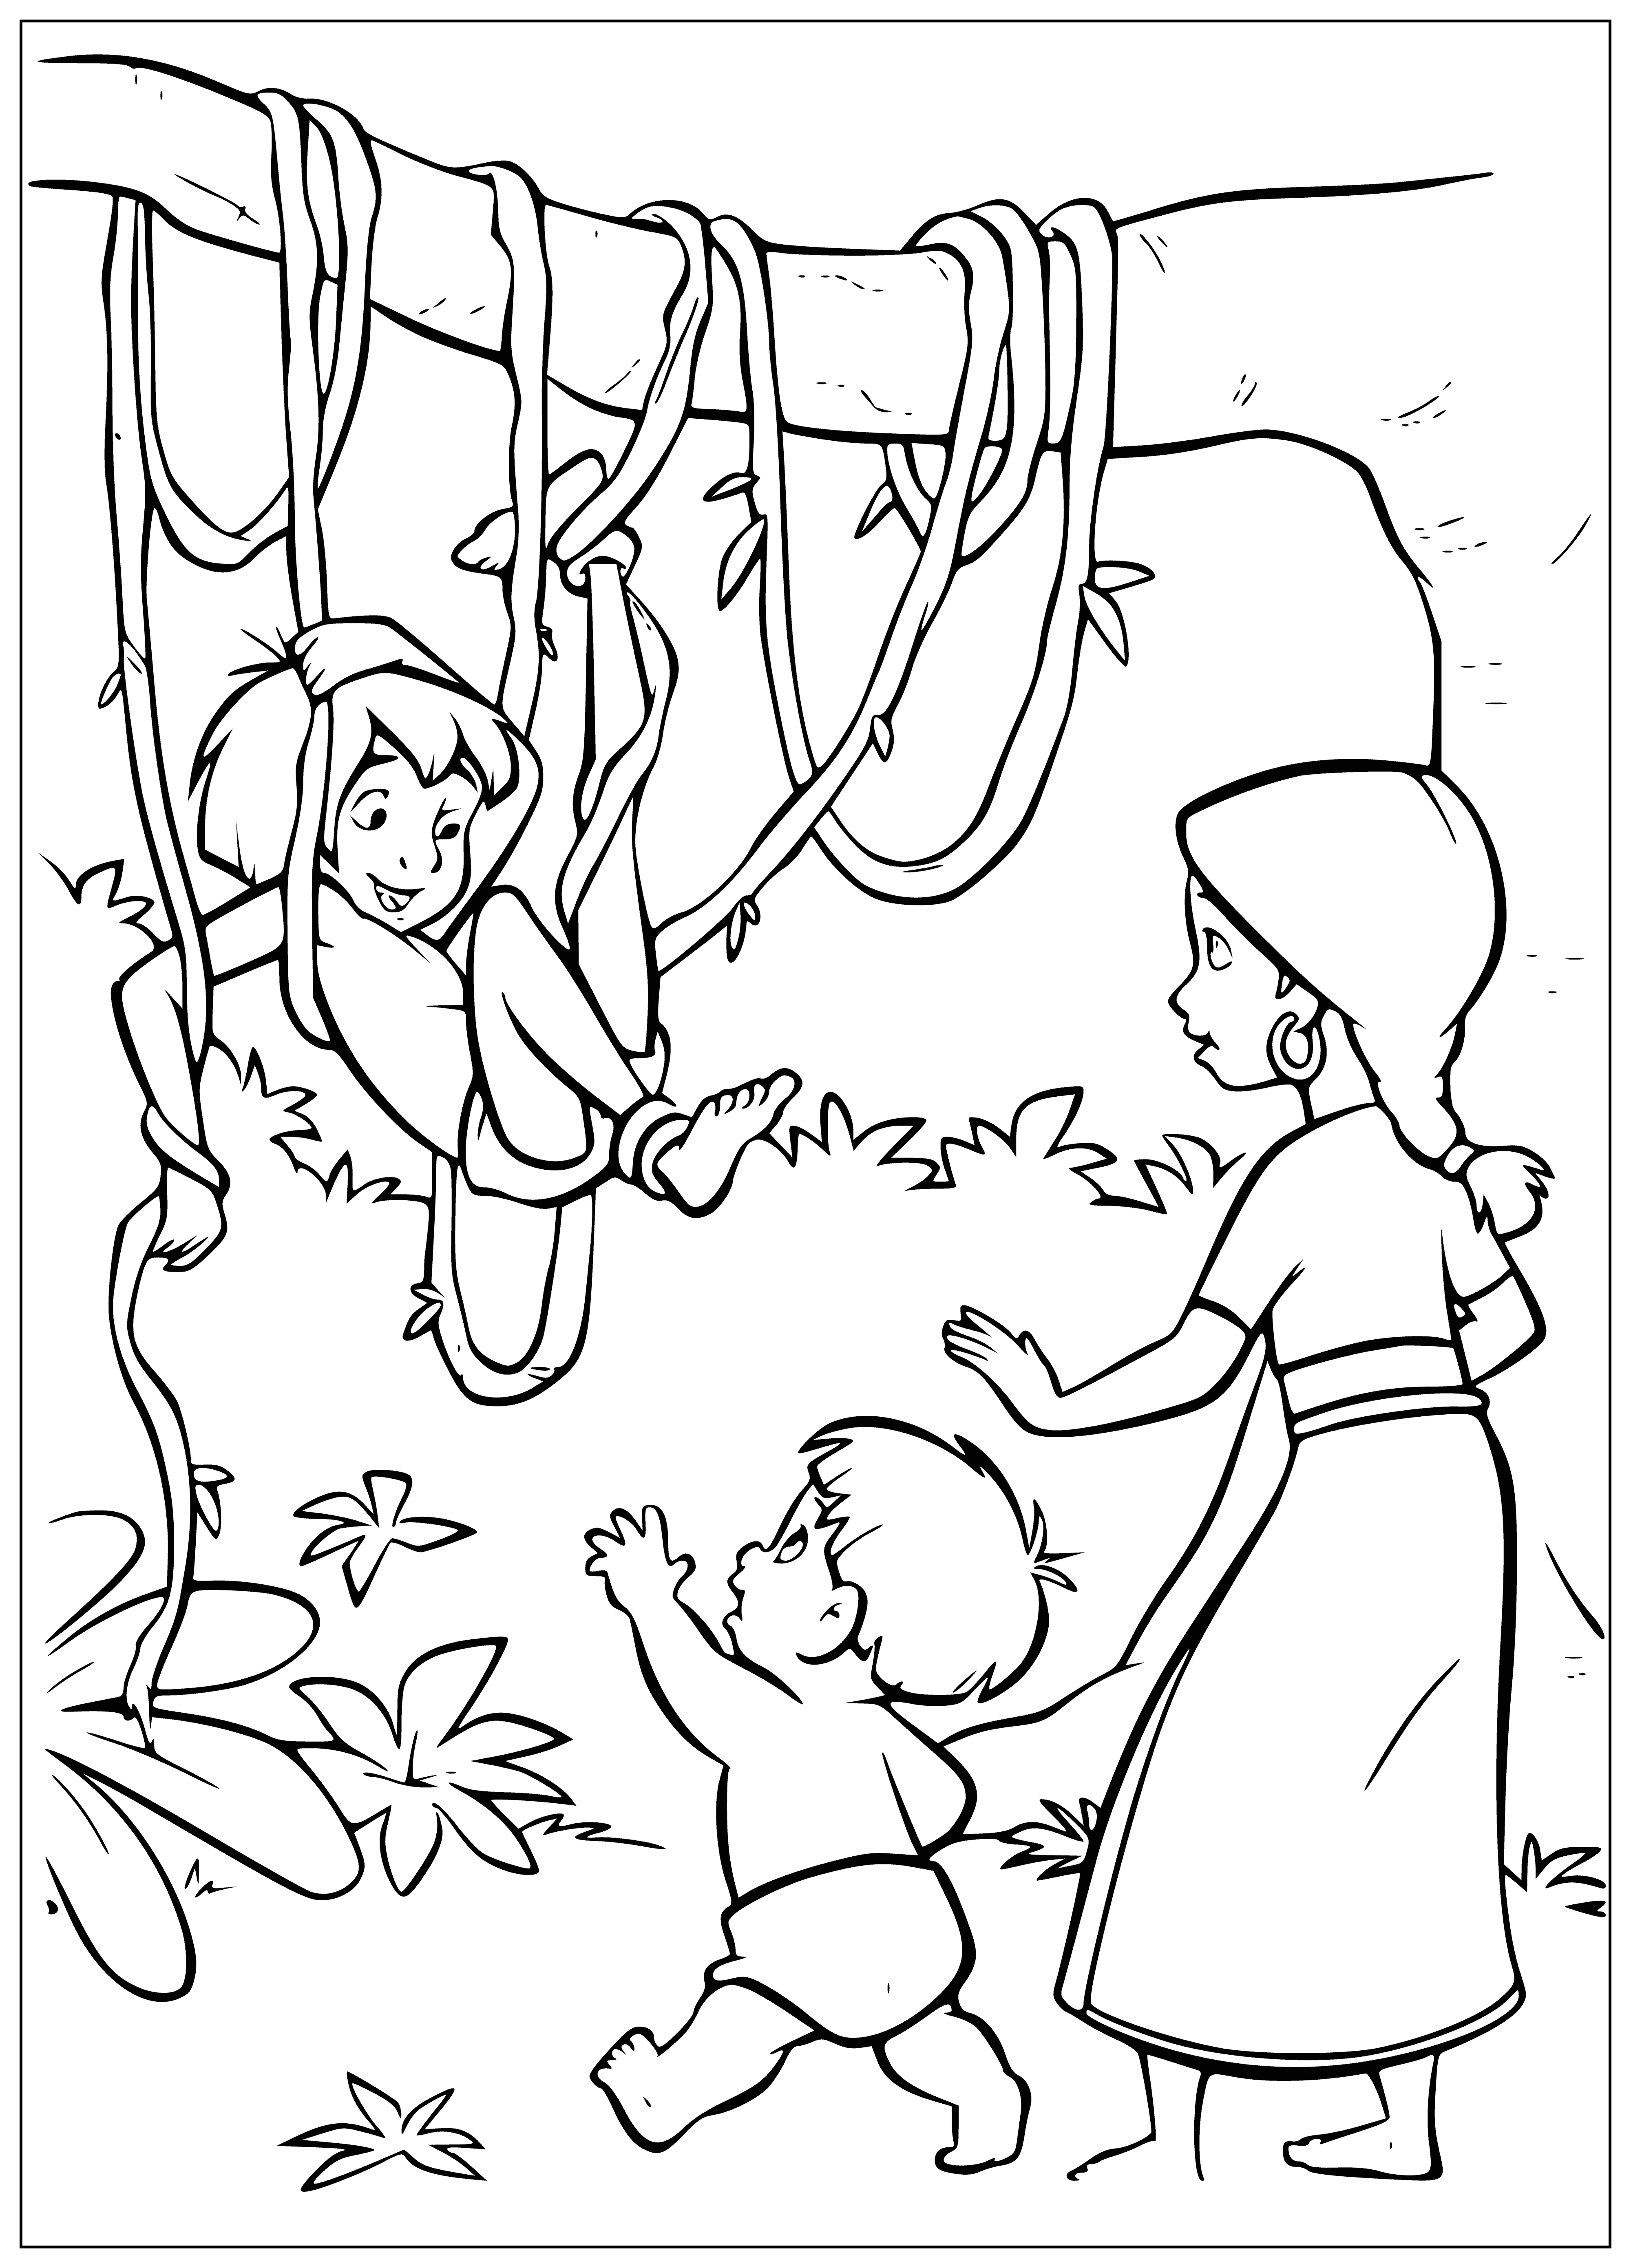 Mowgli coloring page